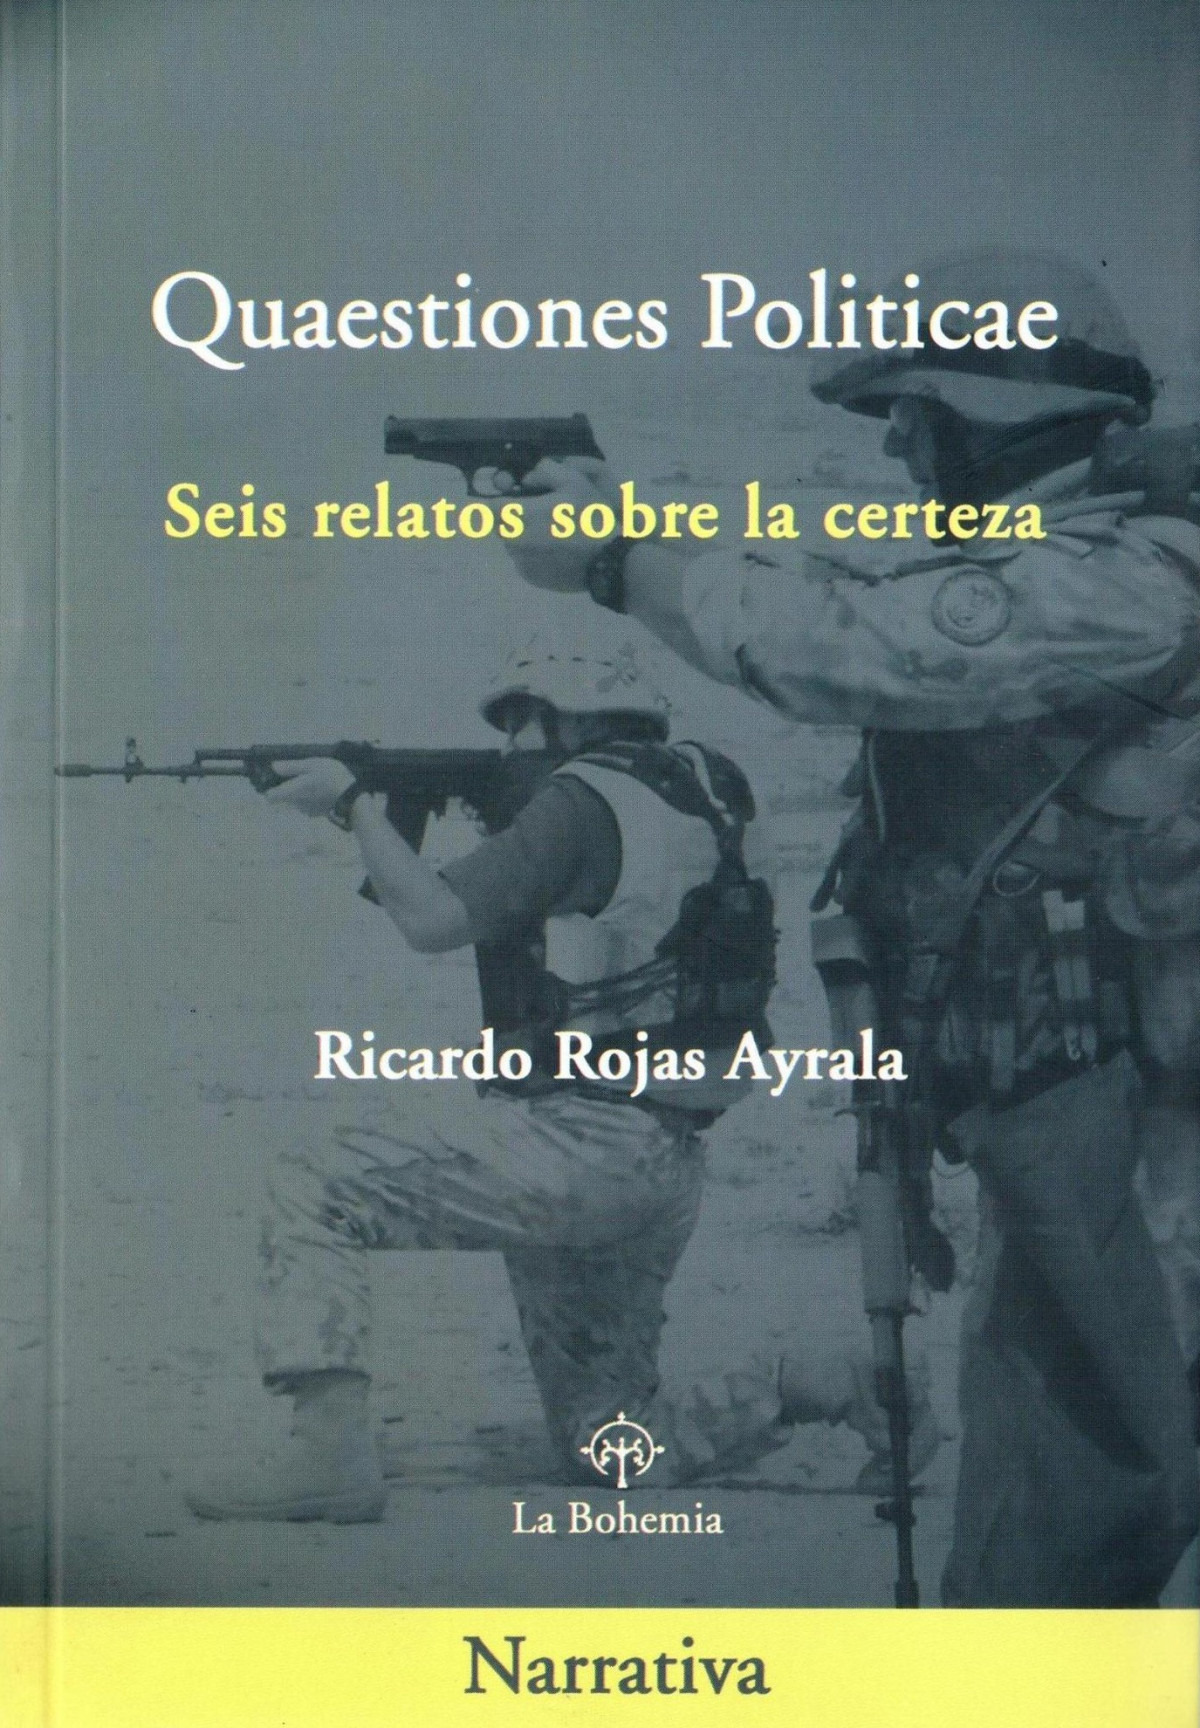 Libro Rojas Ayrala 8   Quaestiones politicae (edición argentina)